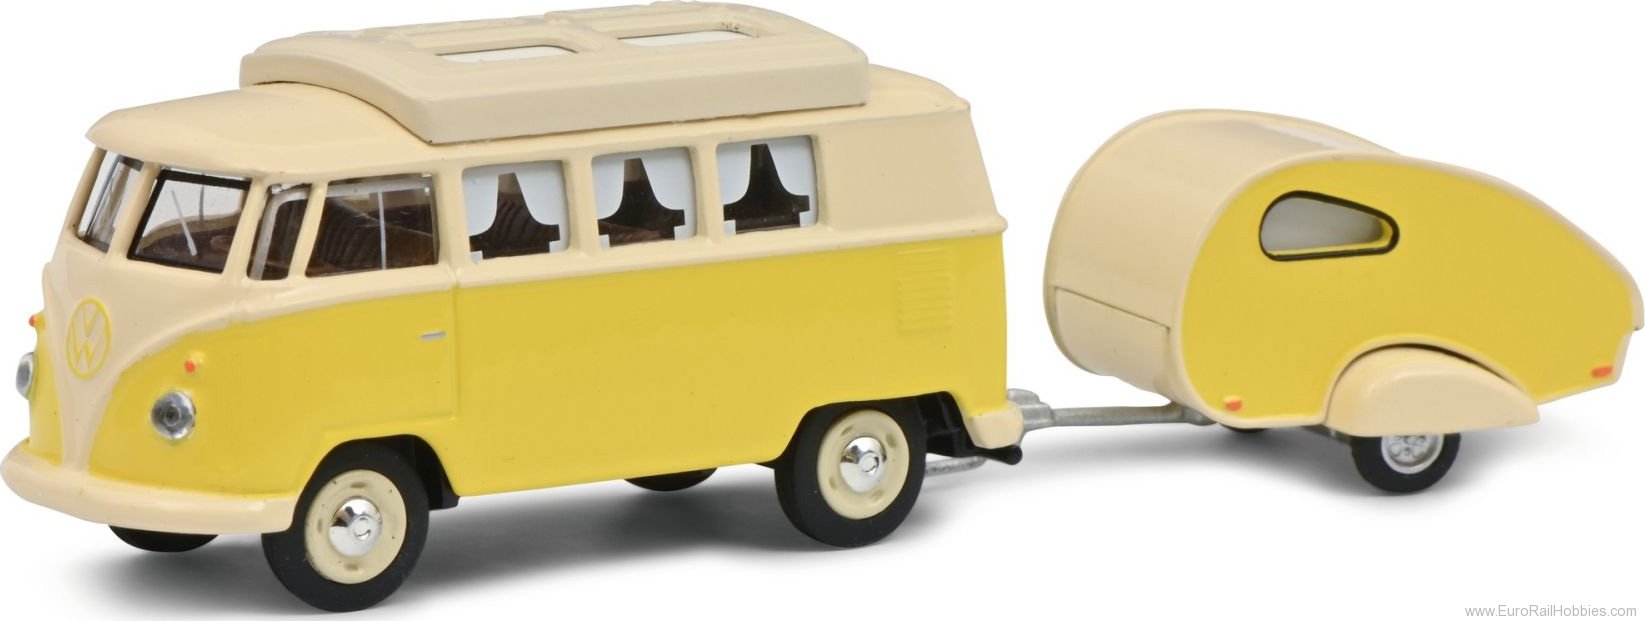 Schuco 452026700 VW T1 Camper w.caravan  (1:64 Edition)